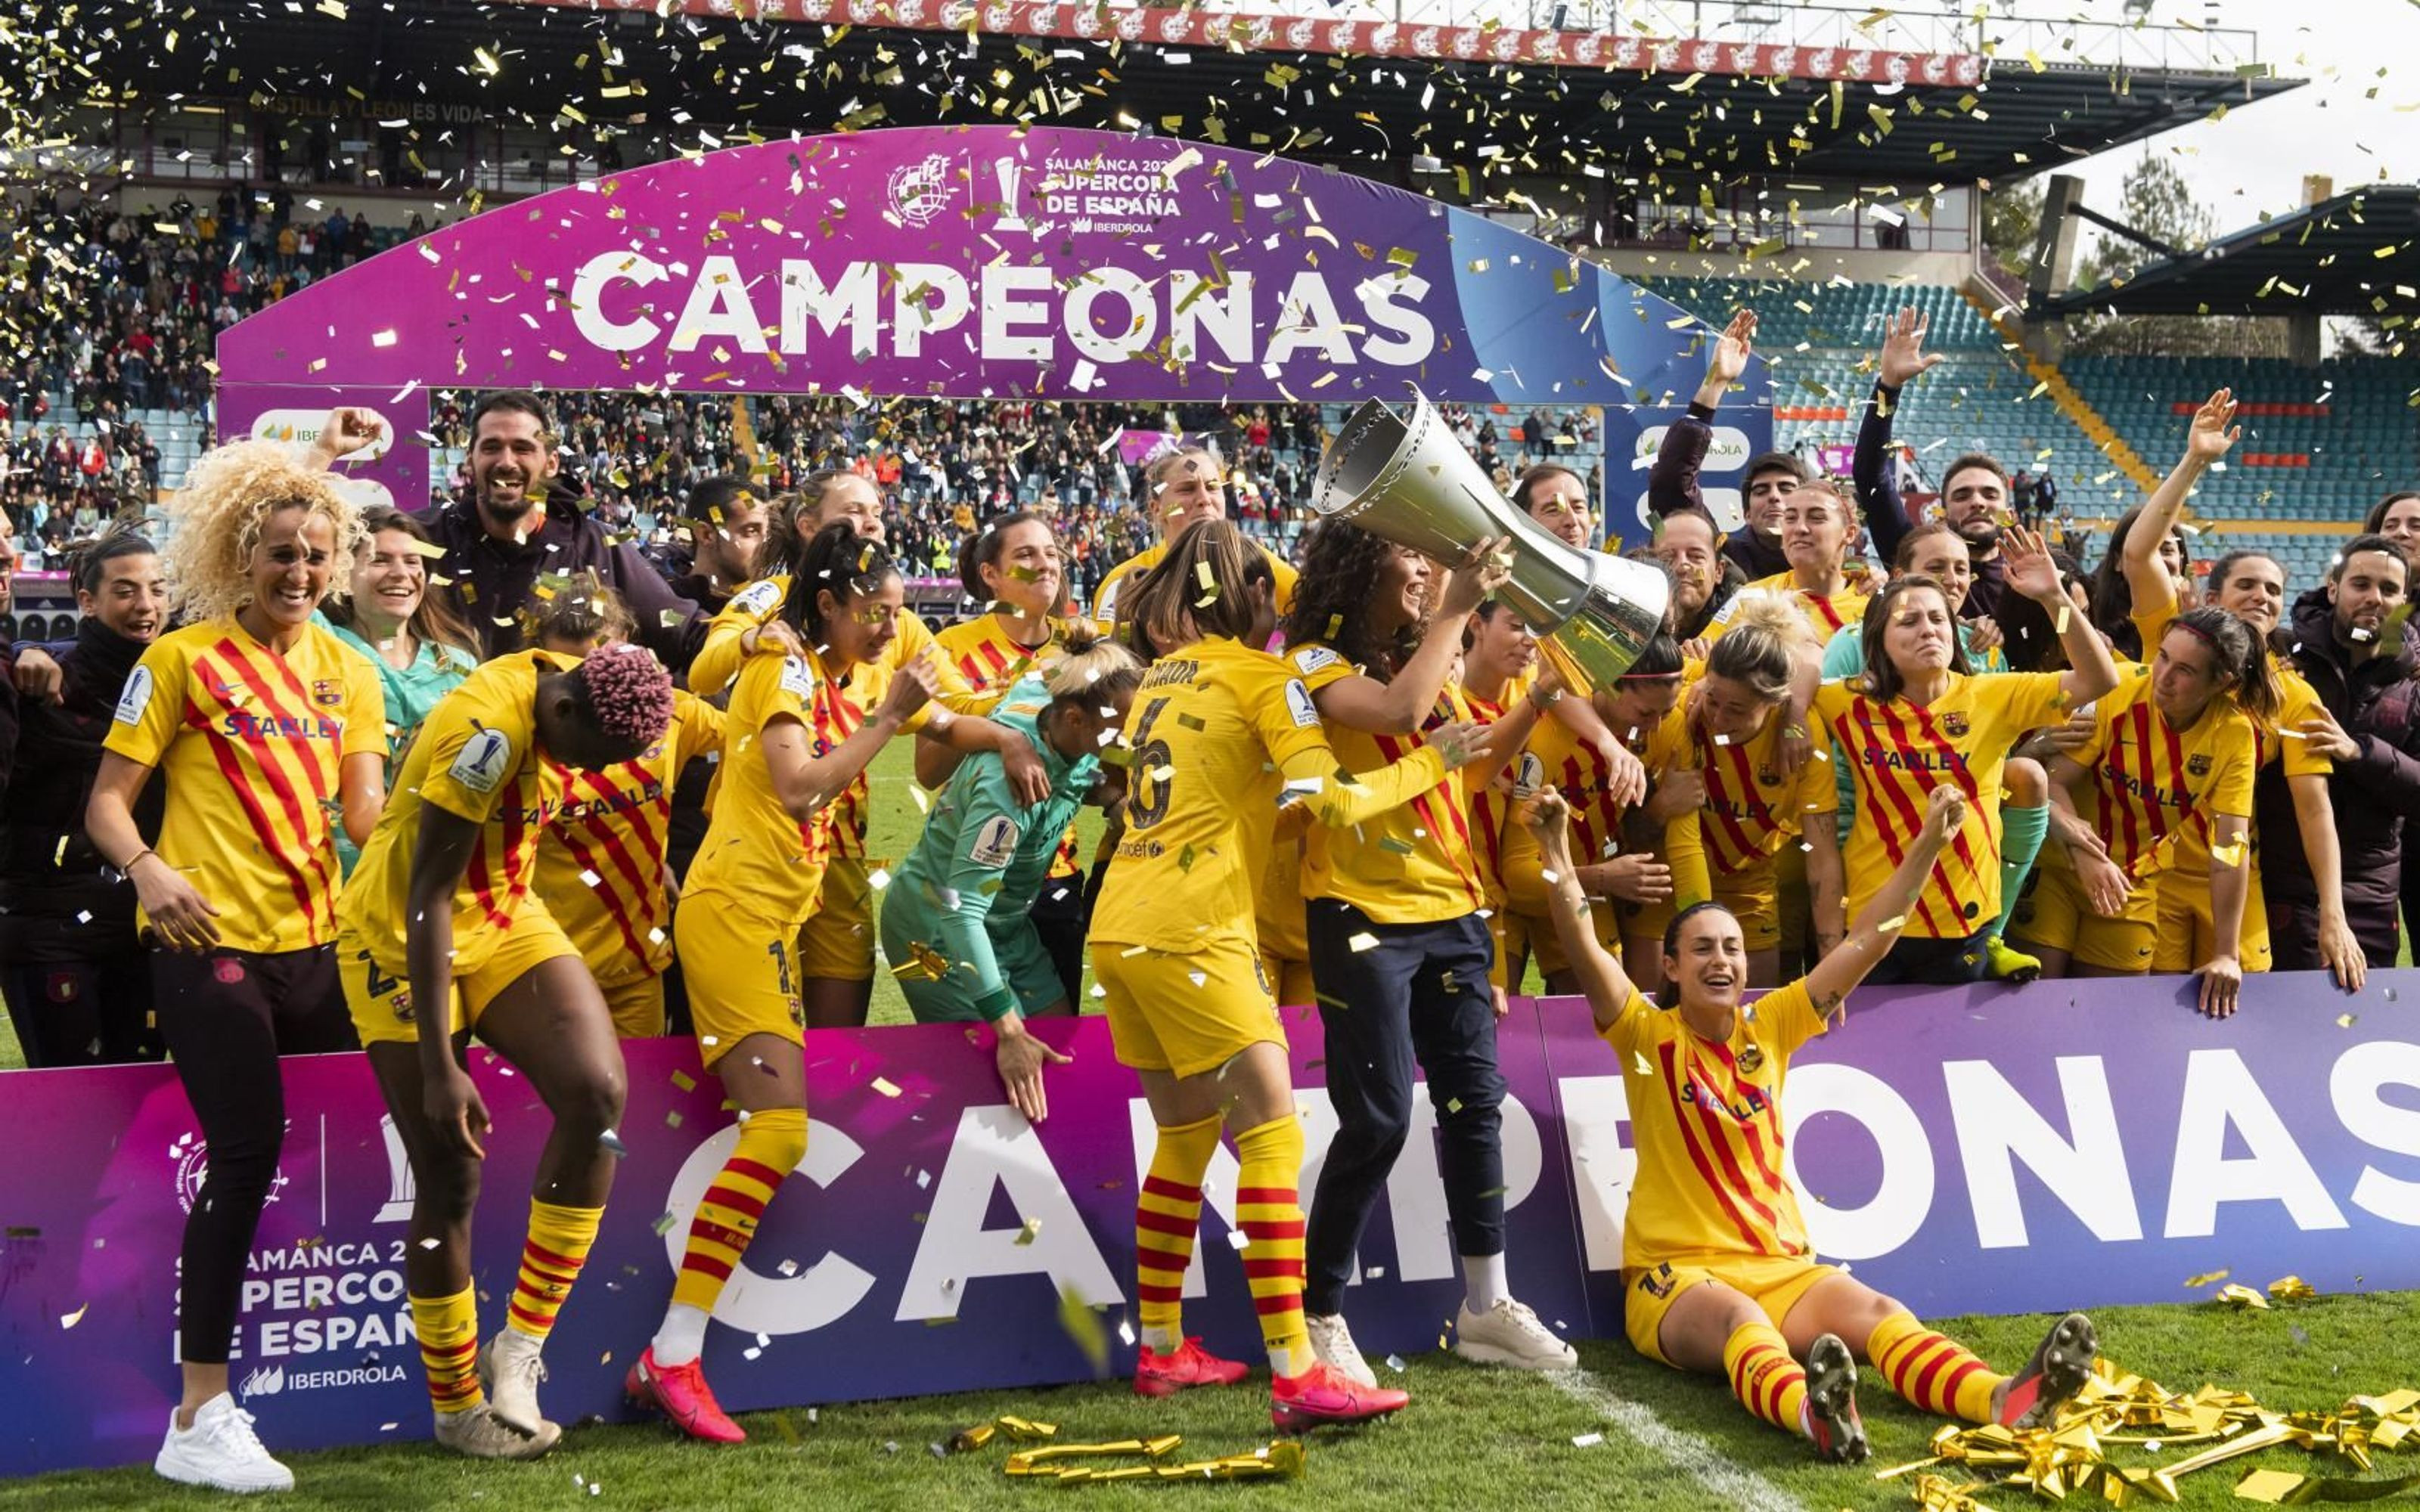 El Barça femenino levantando la Supercopa de España / FC Barcelona